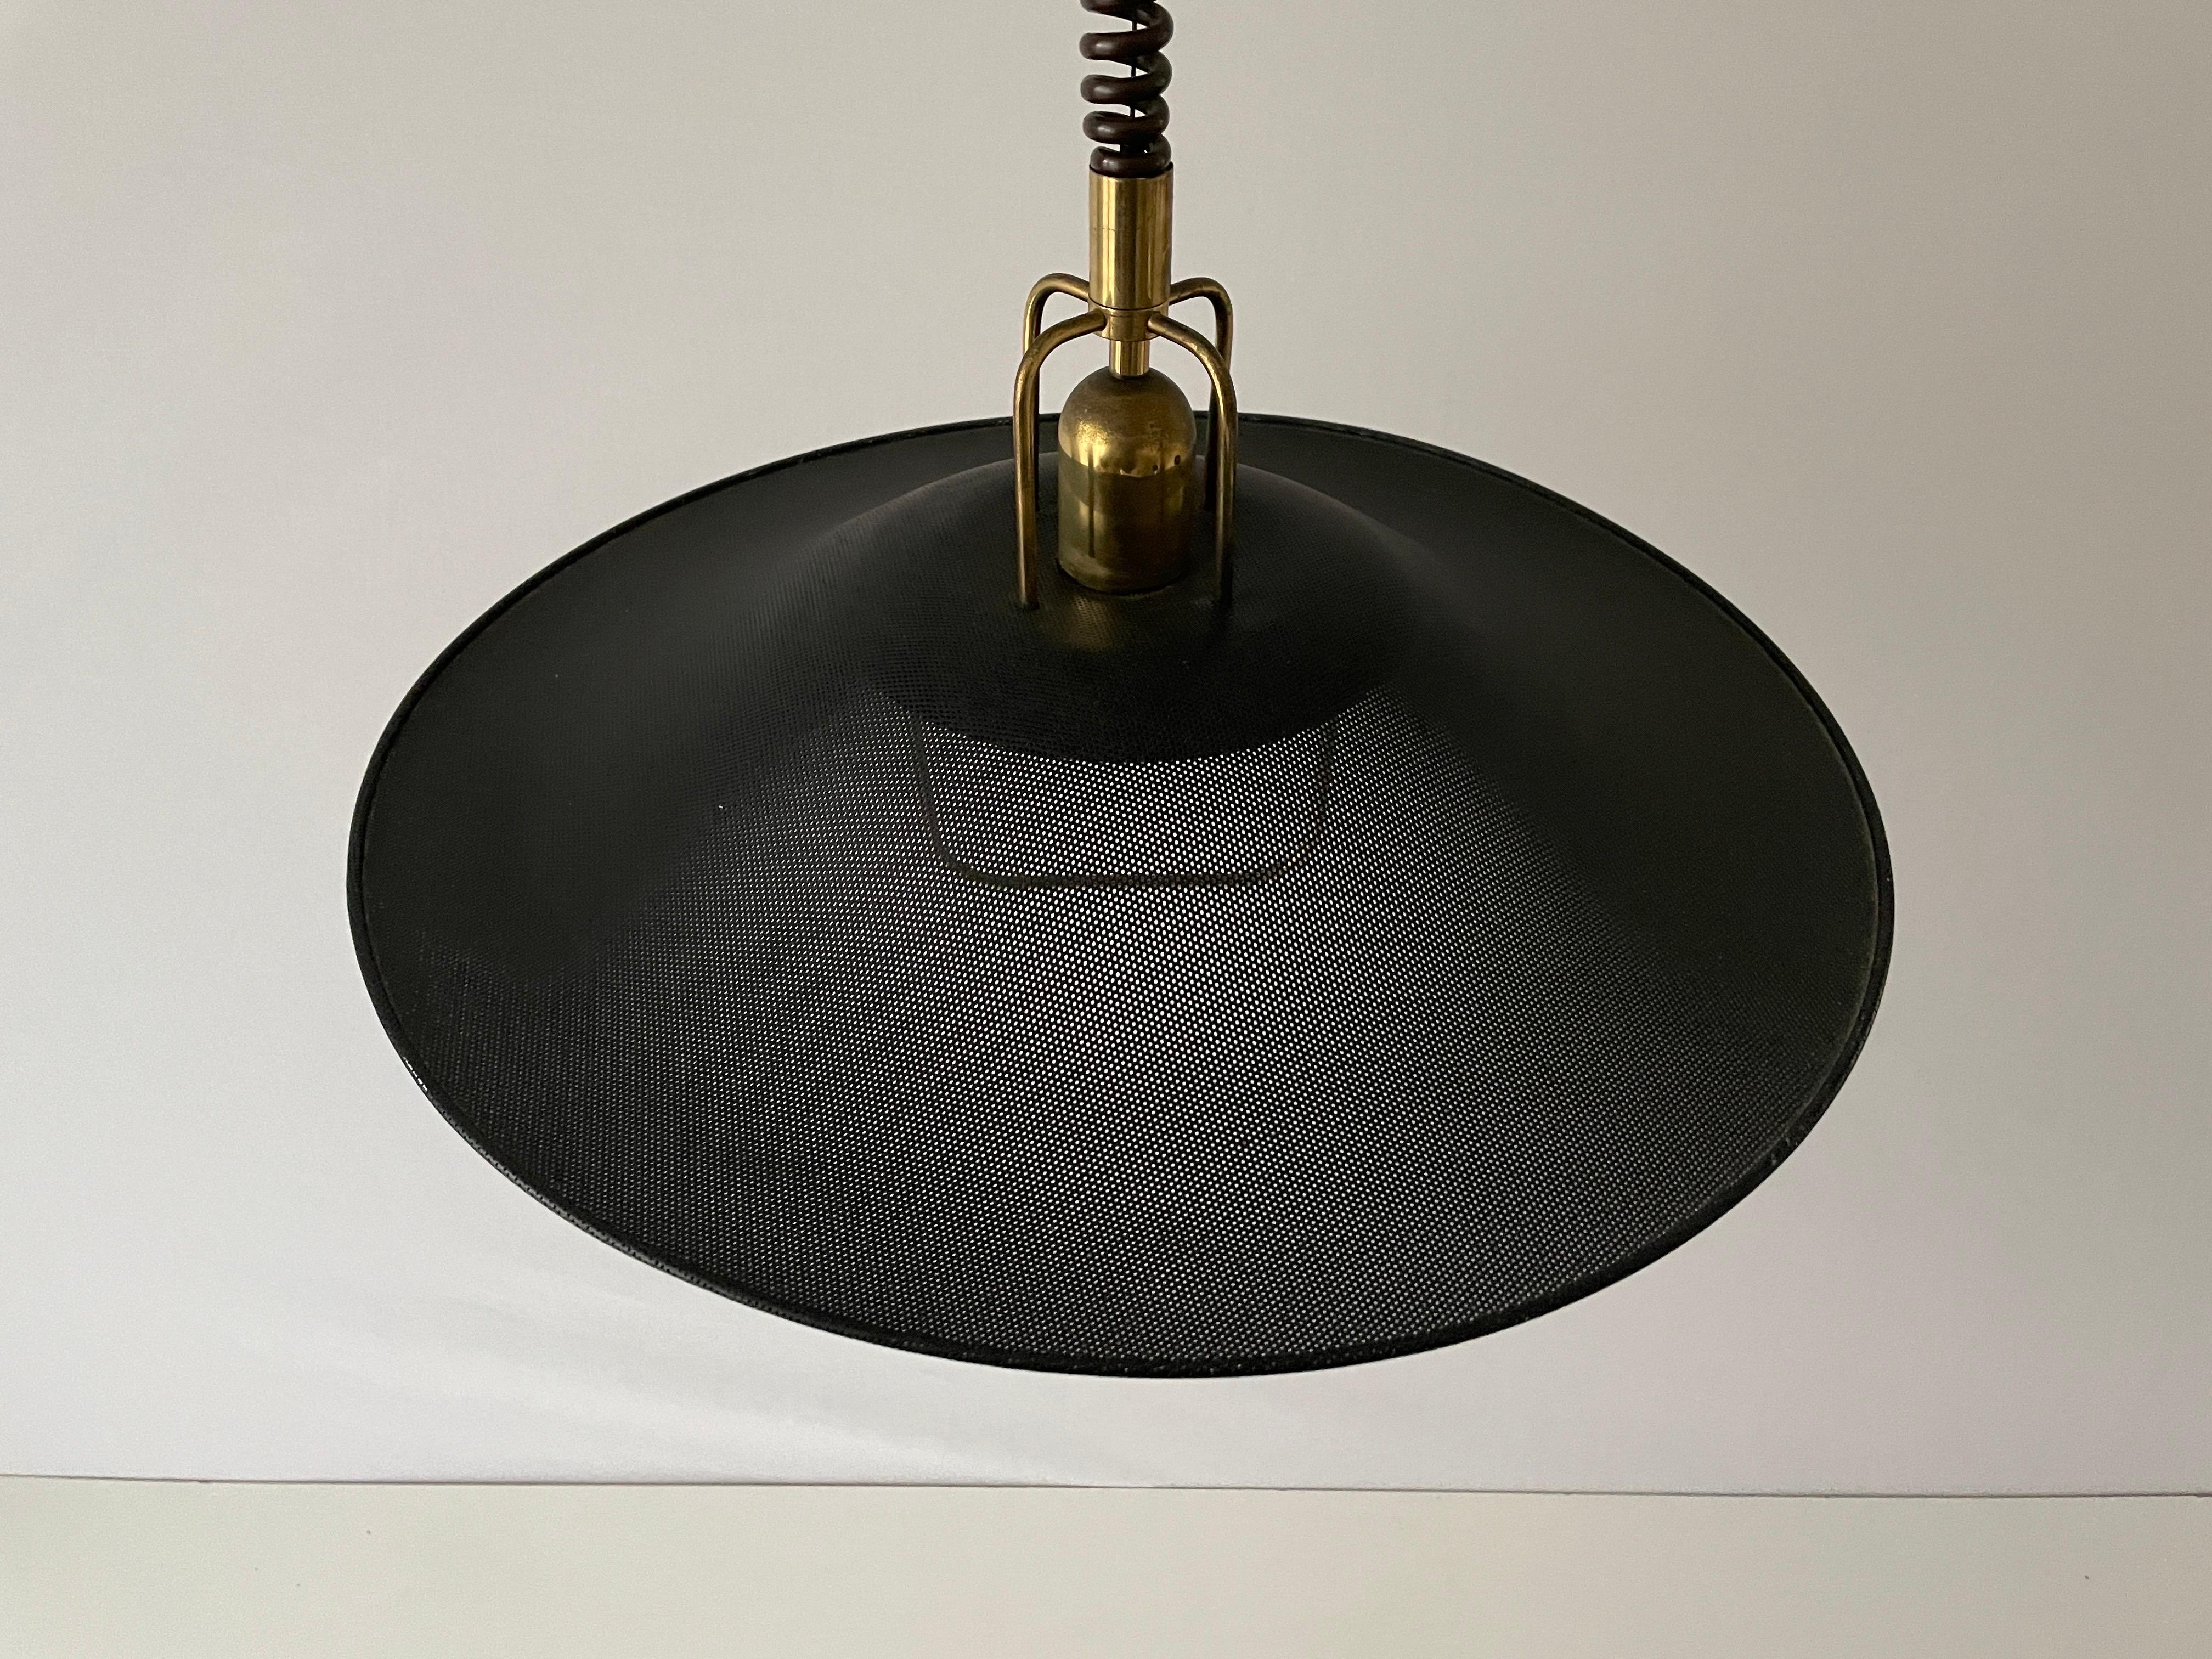 Lampe suspendue réglable en métal noir et doré par Cosack, années 1970, Allemagne

Grand abat-jour réglable.
Fabriqué en Allemagne

Cette lampe fonctionne avec des ampoules E27.

Mesures : 
Hauteur réglable entre 70 cm et 160 cm
Diamètre de